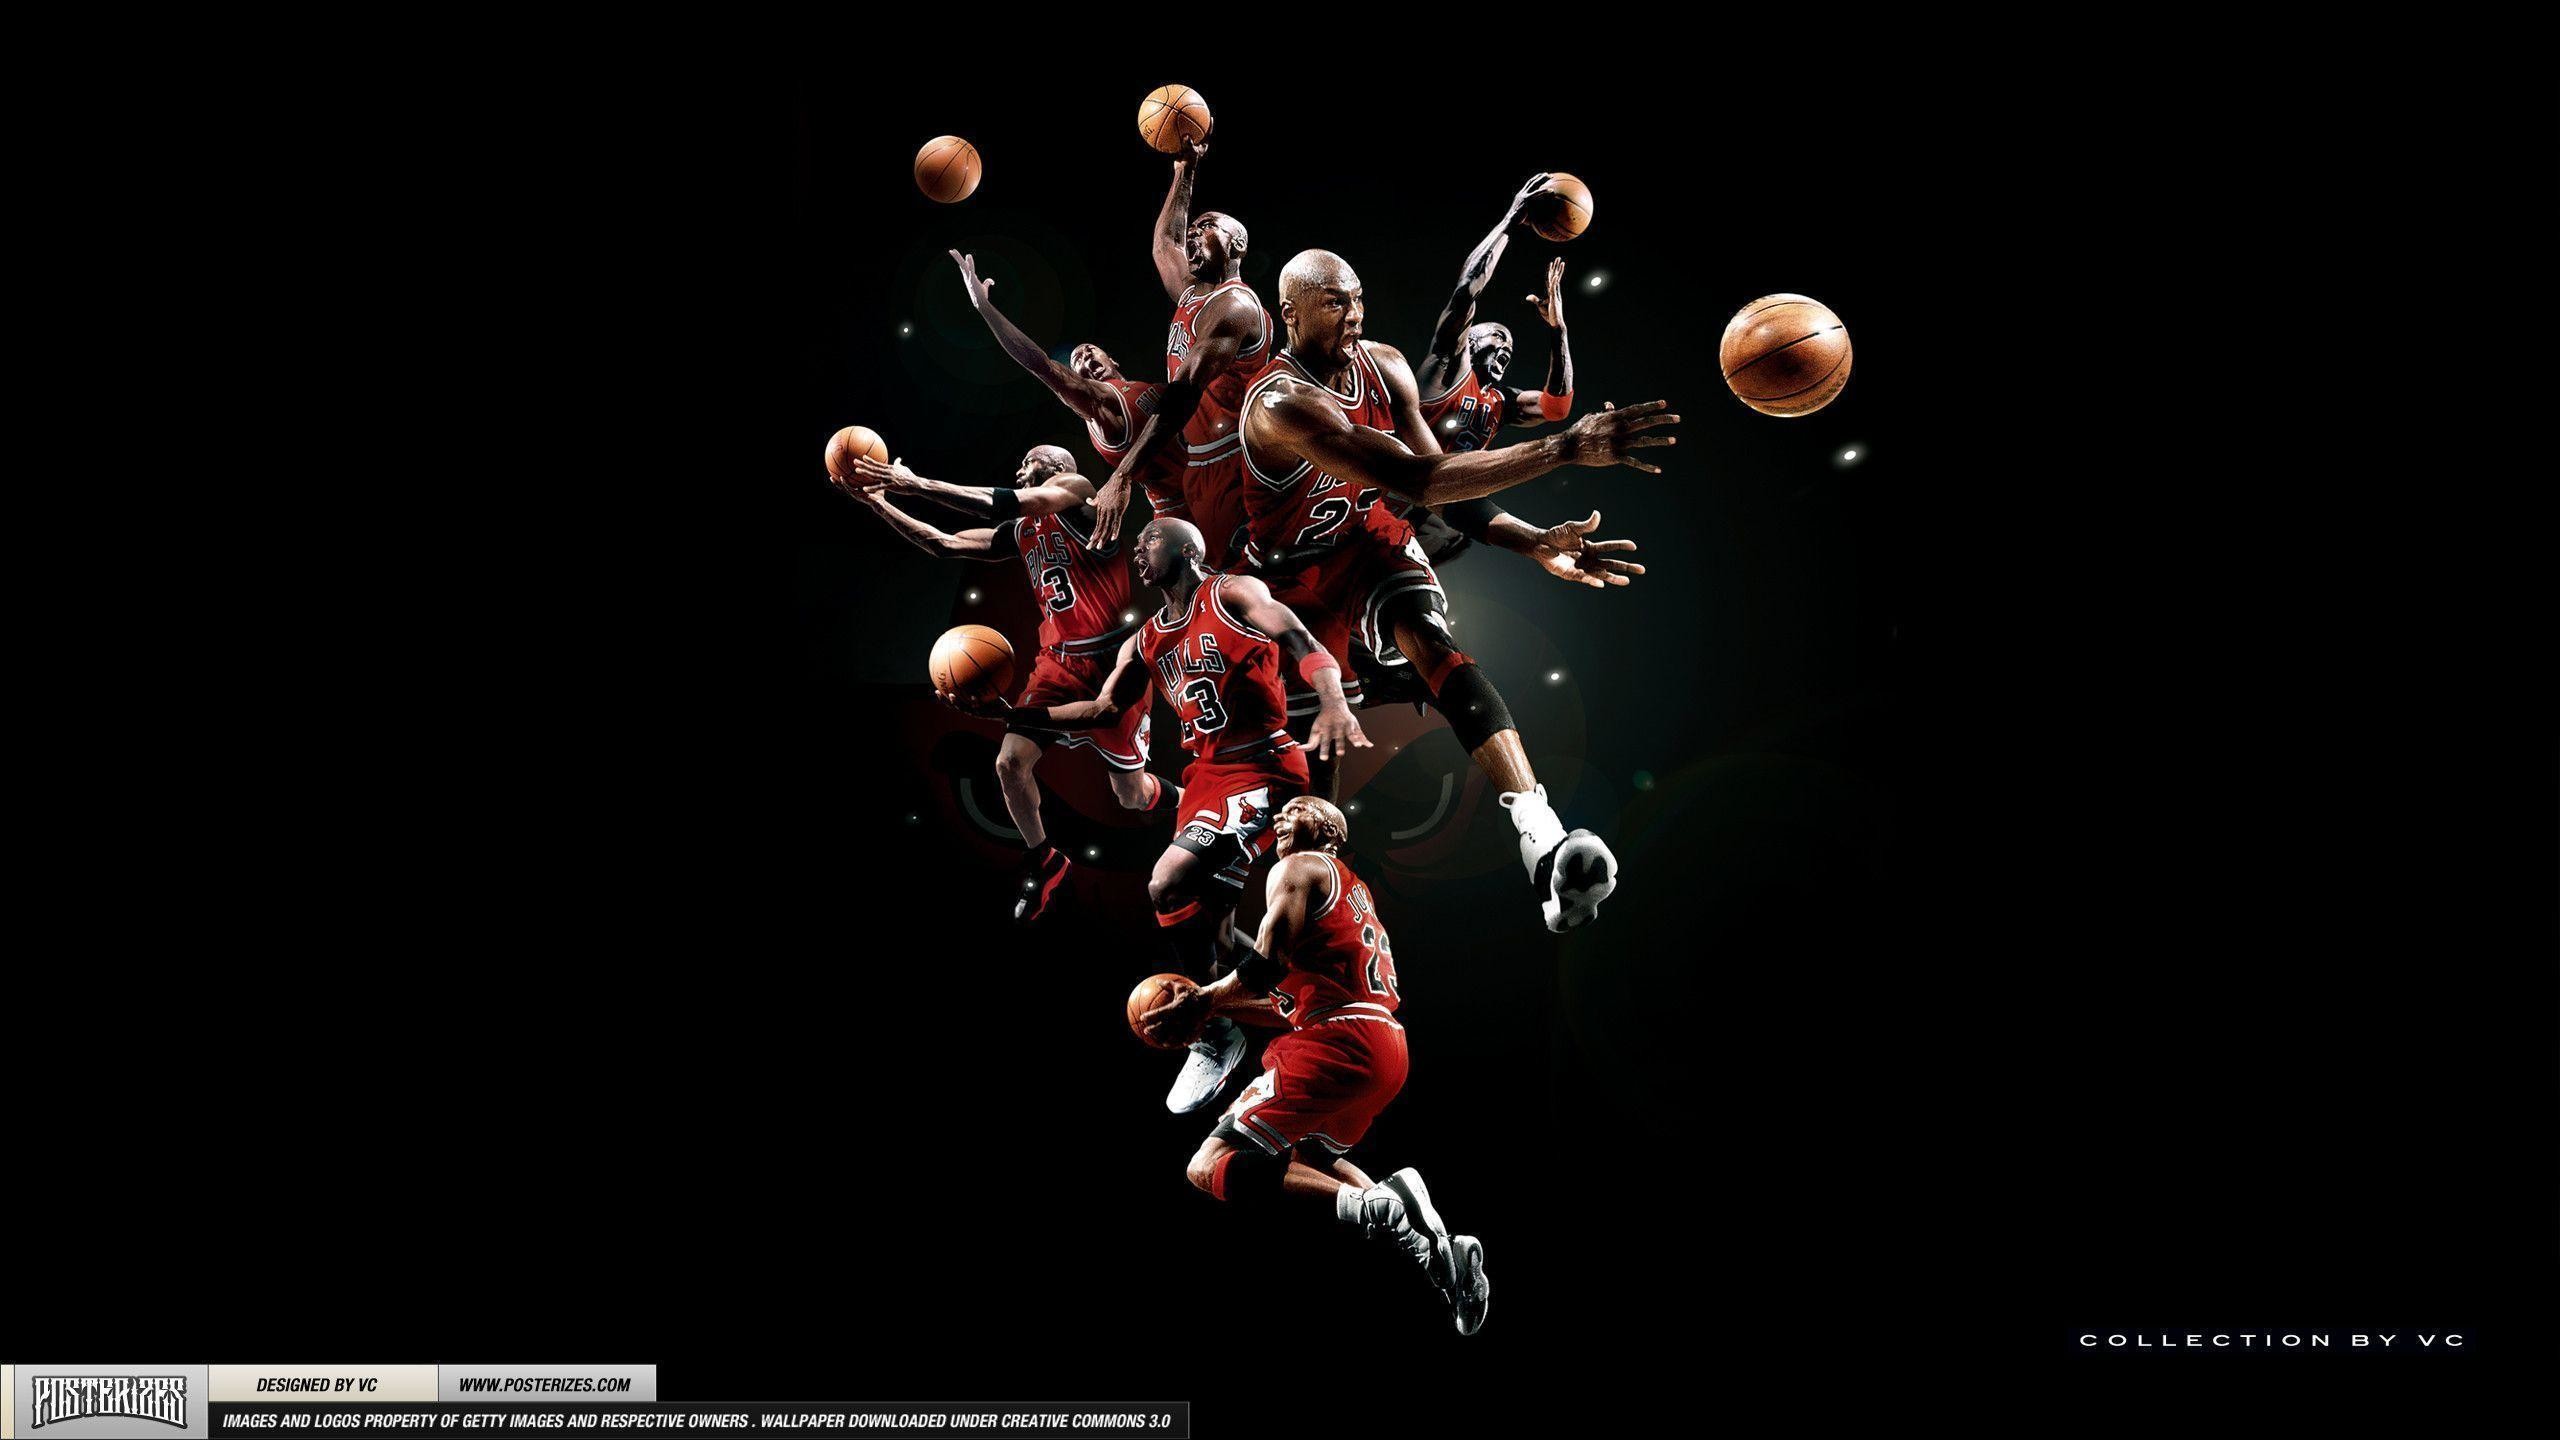 Michael Jordan Logo Wallpapers